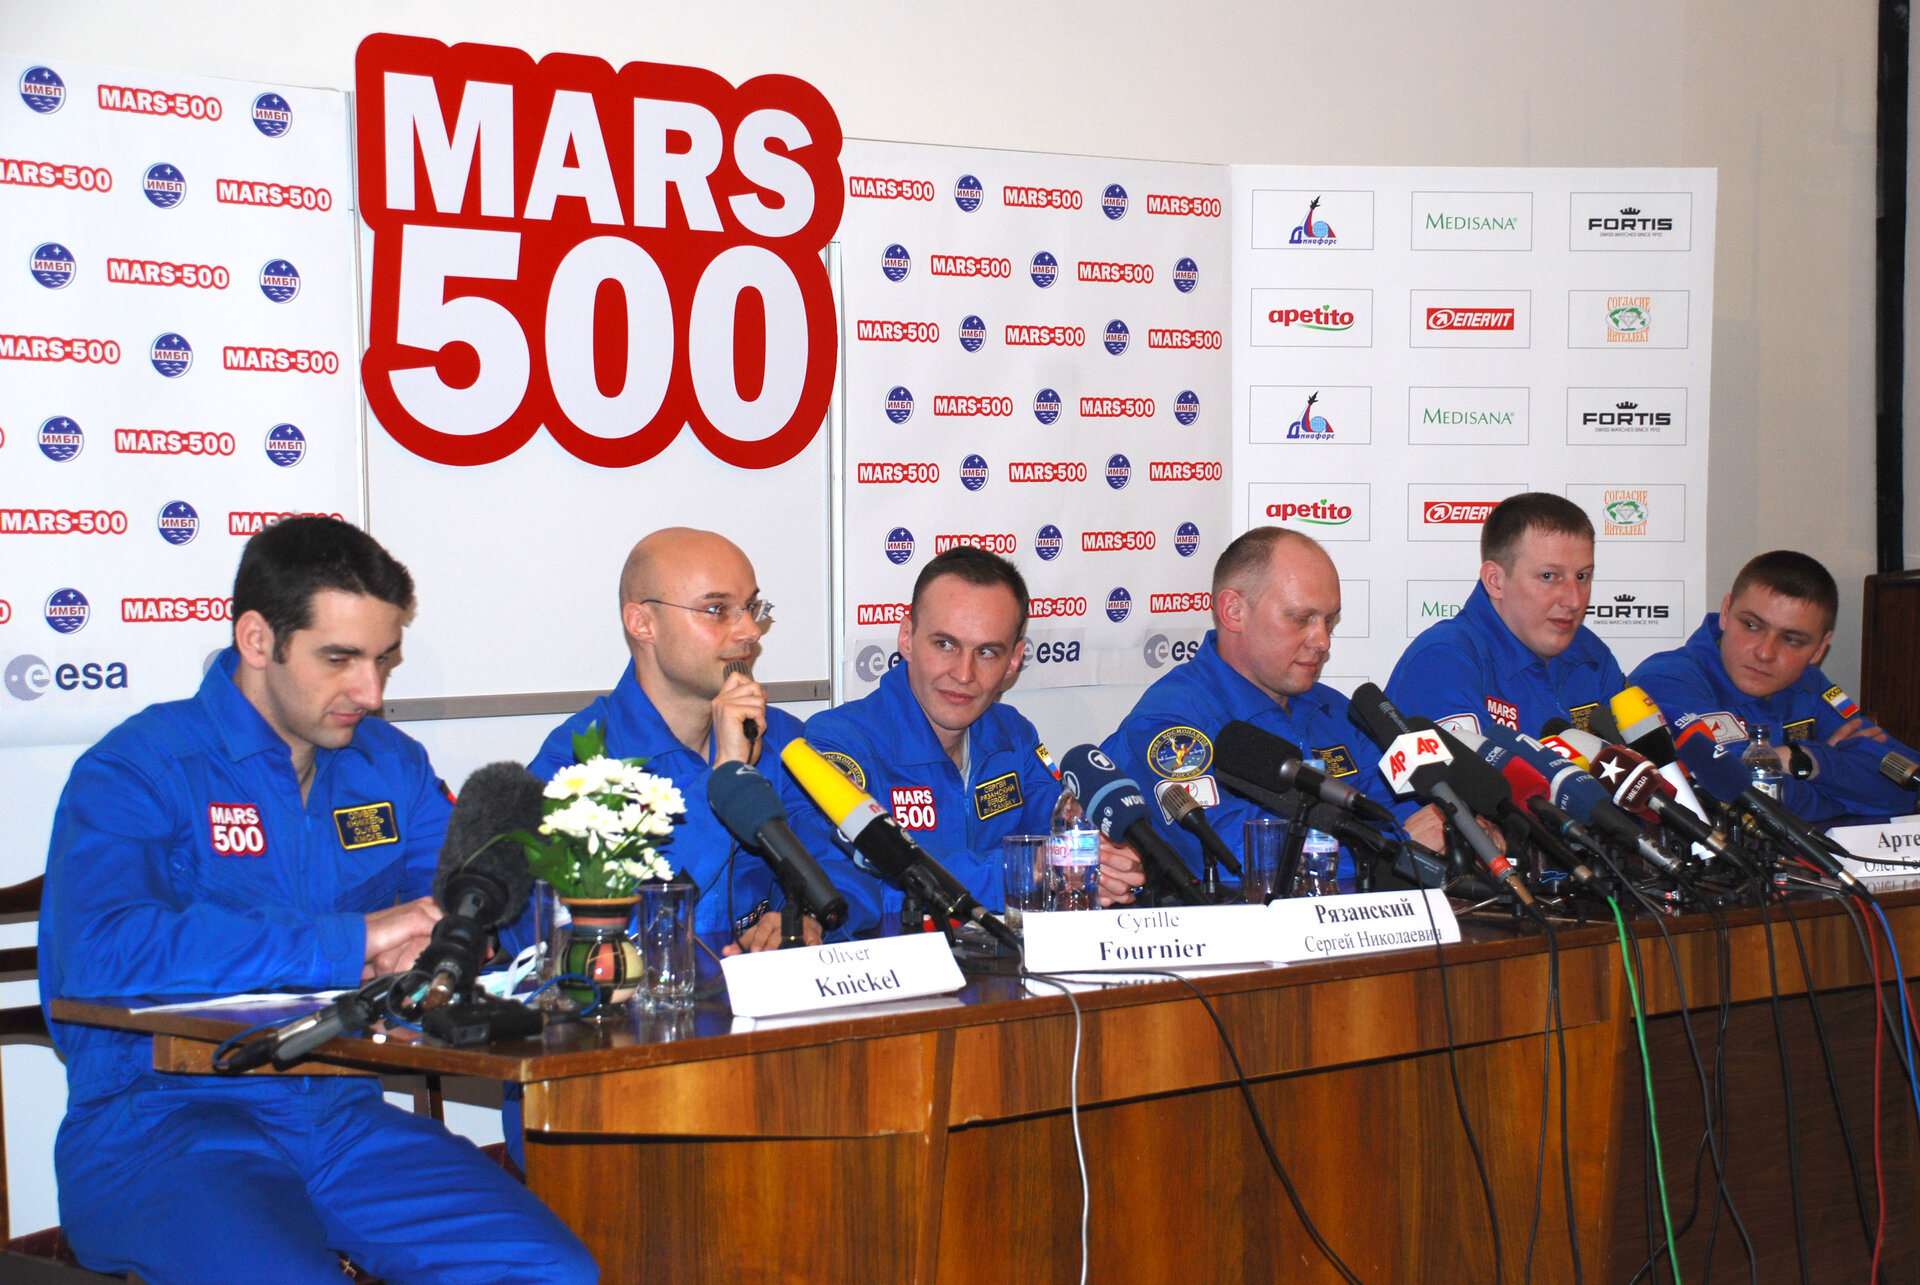 L'equipaggio del Mars500 in conferenza stampa prima di entrare in isolamento